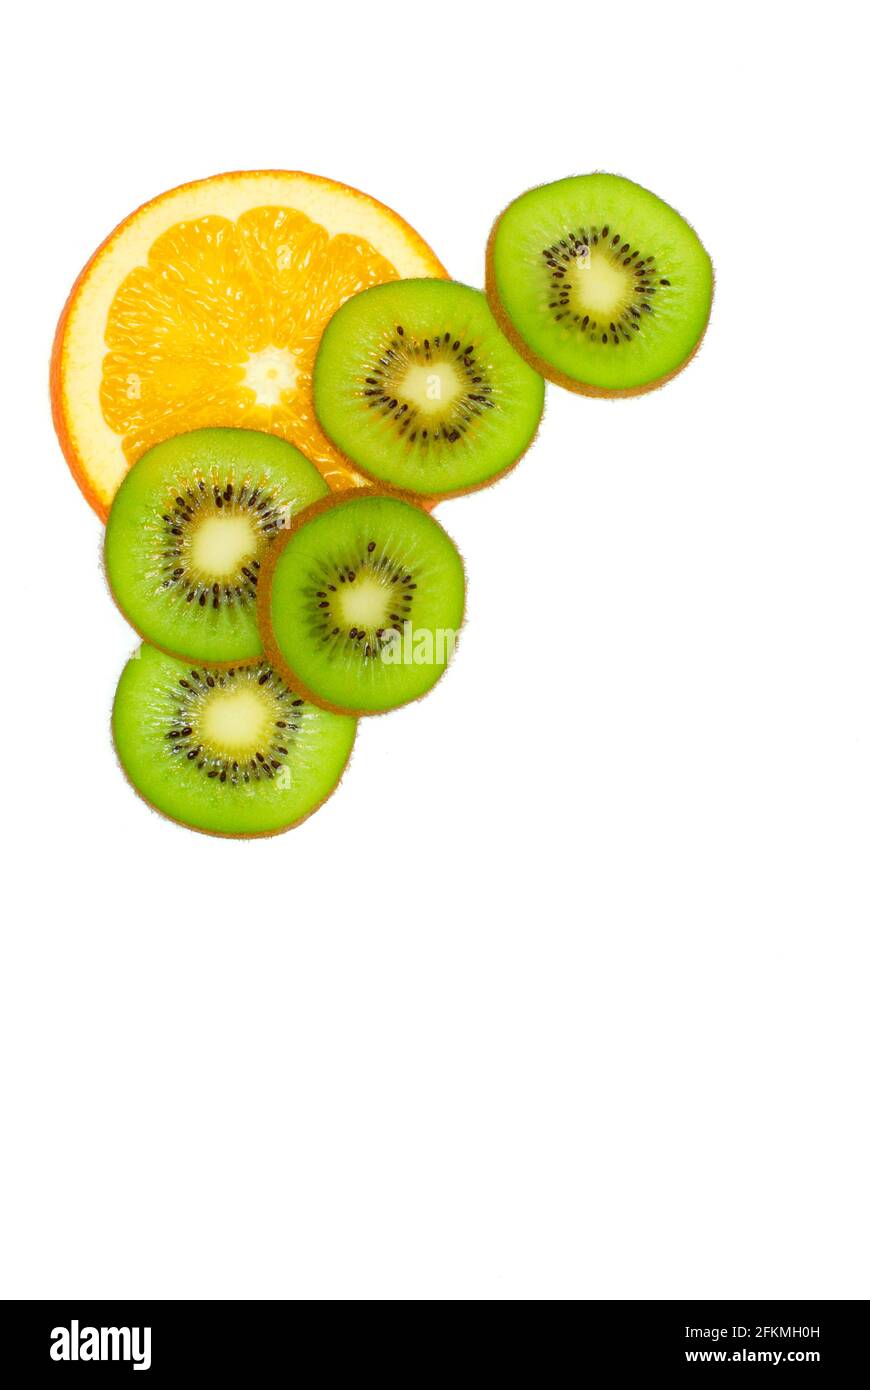 Tranche d'orange et tranches de kiwis, vitamine C Banque D'Images